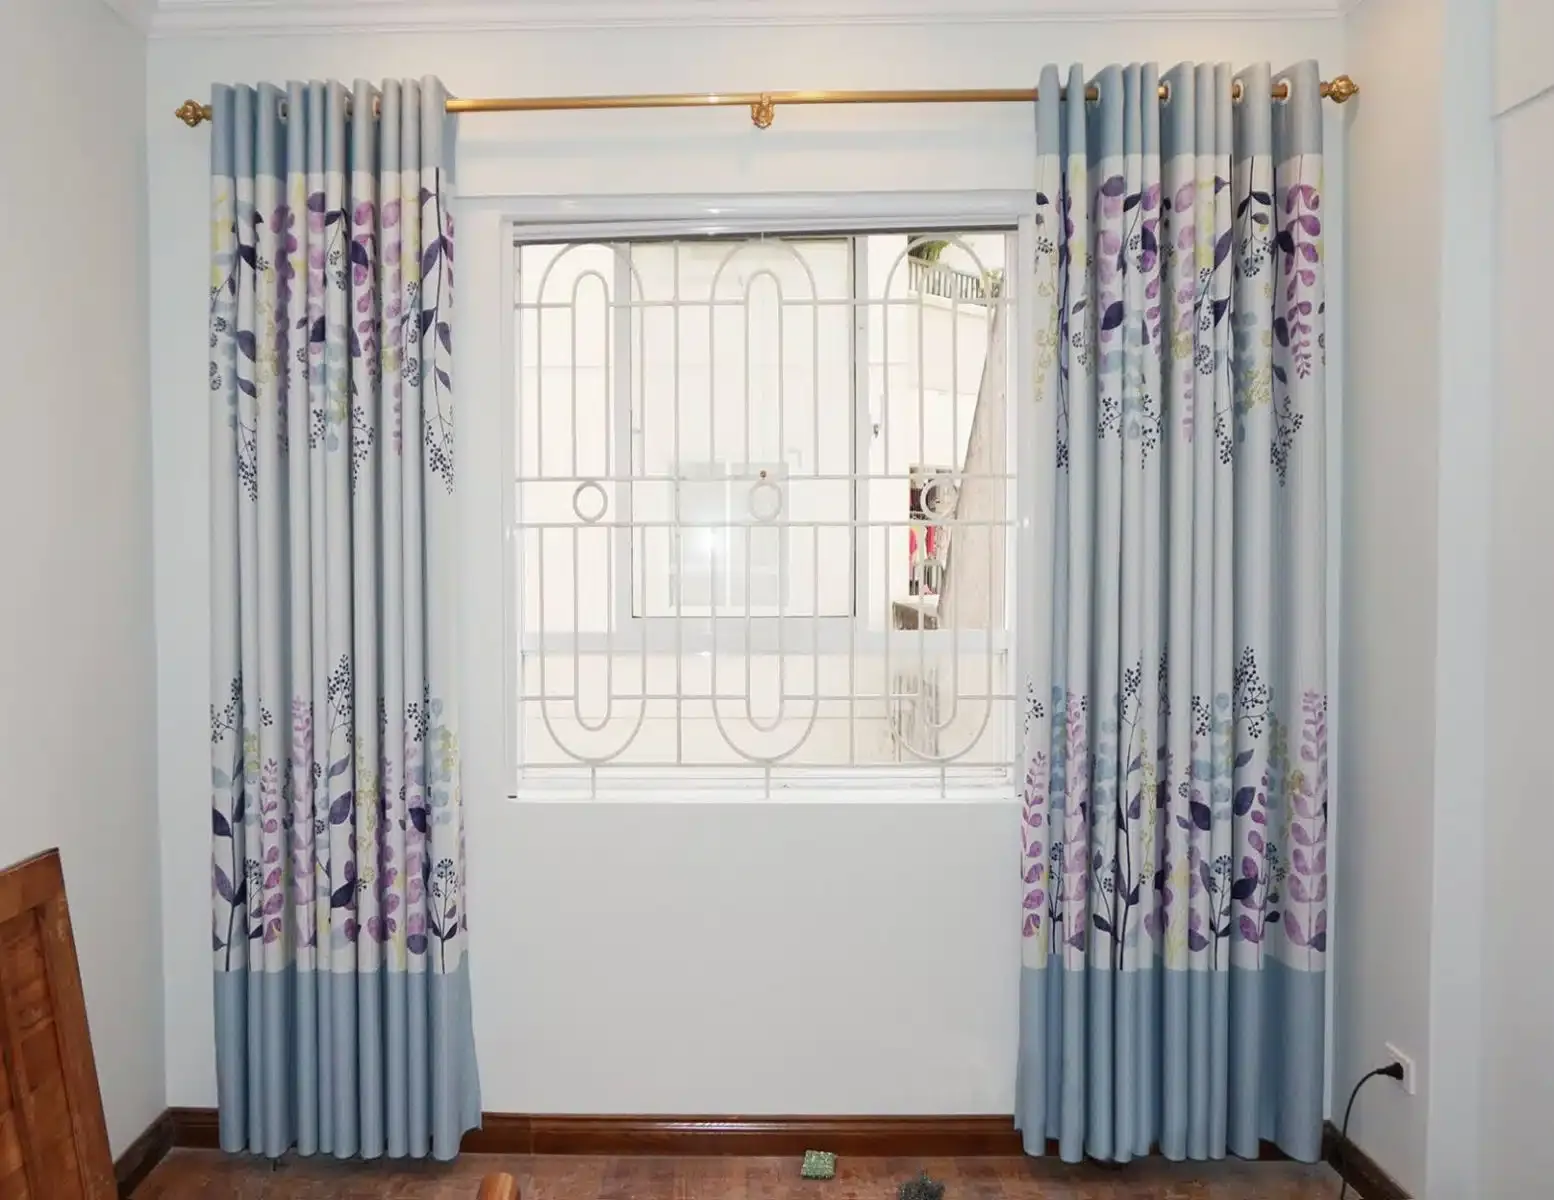 Chọn rèm cửa sổ đẹp với từng phong cách nội thất